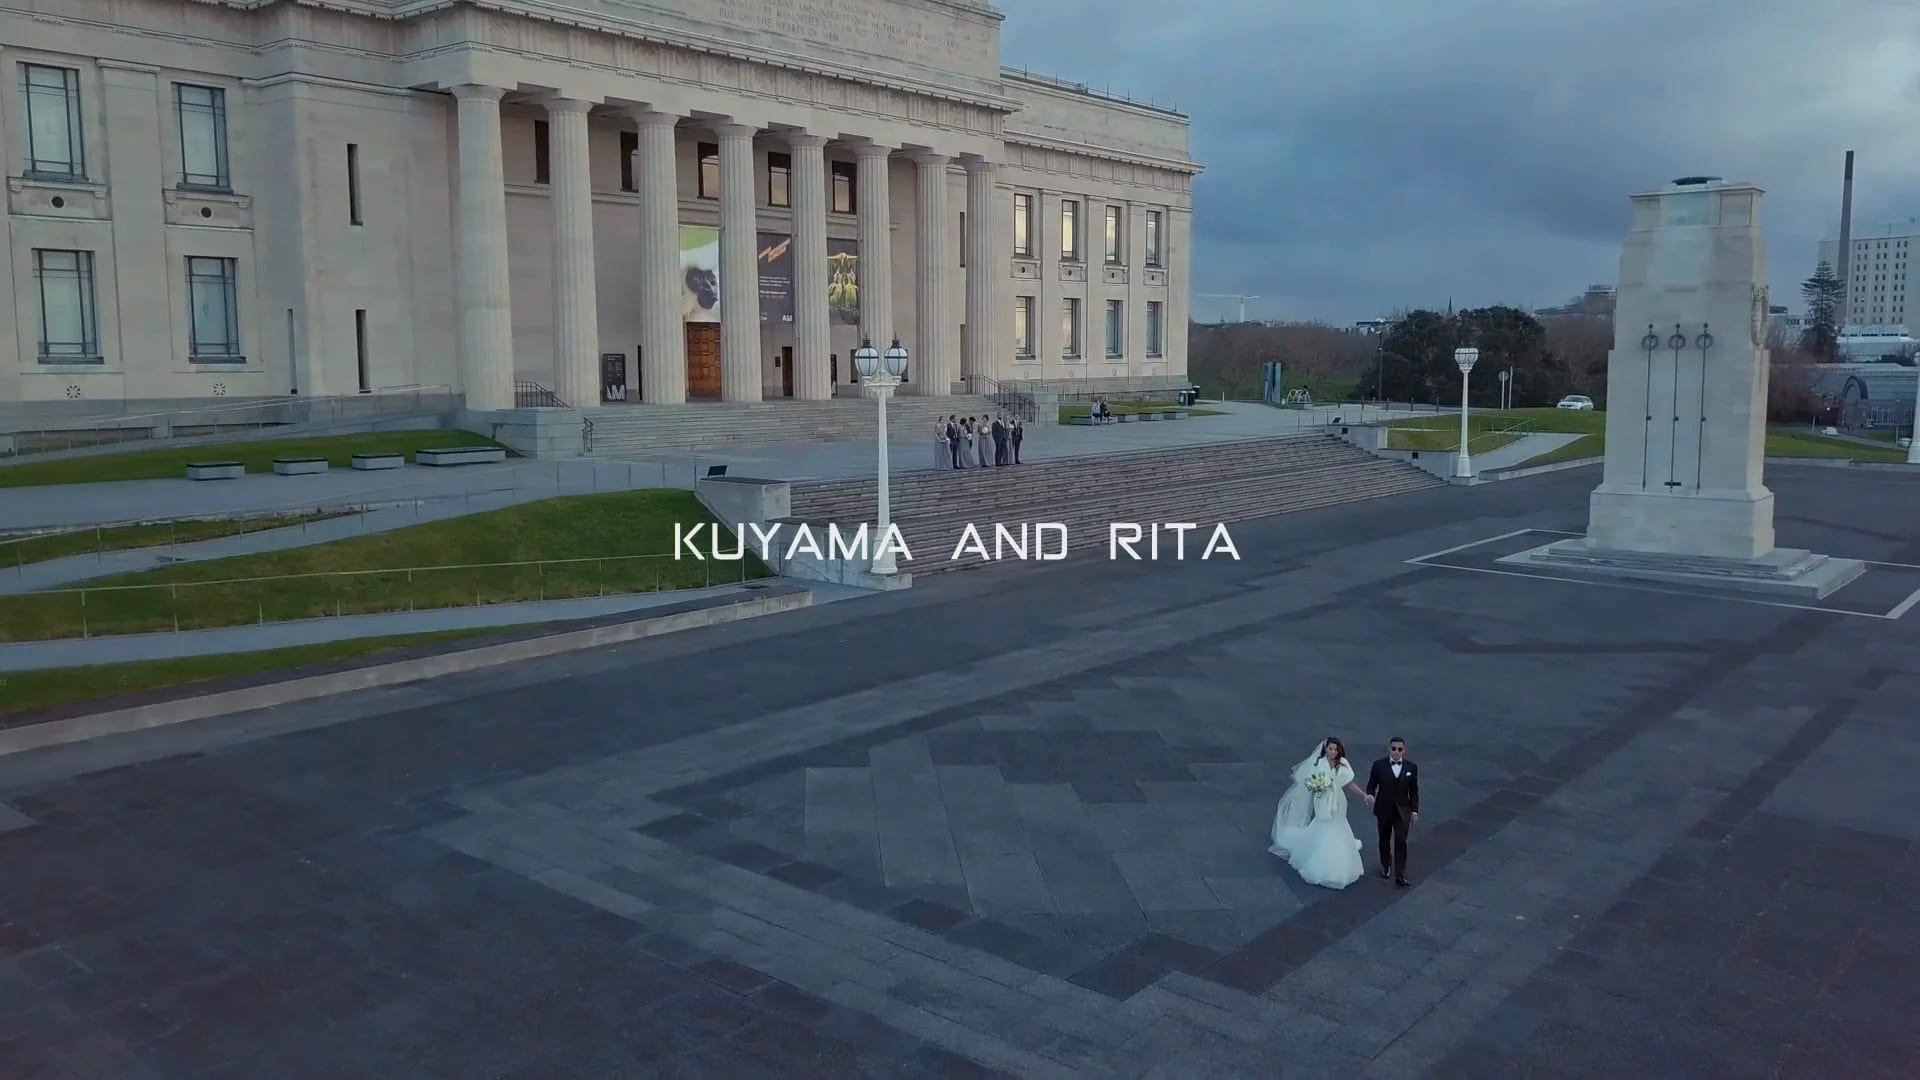 Kuyama & Rita